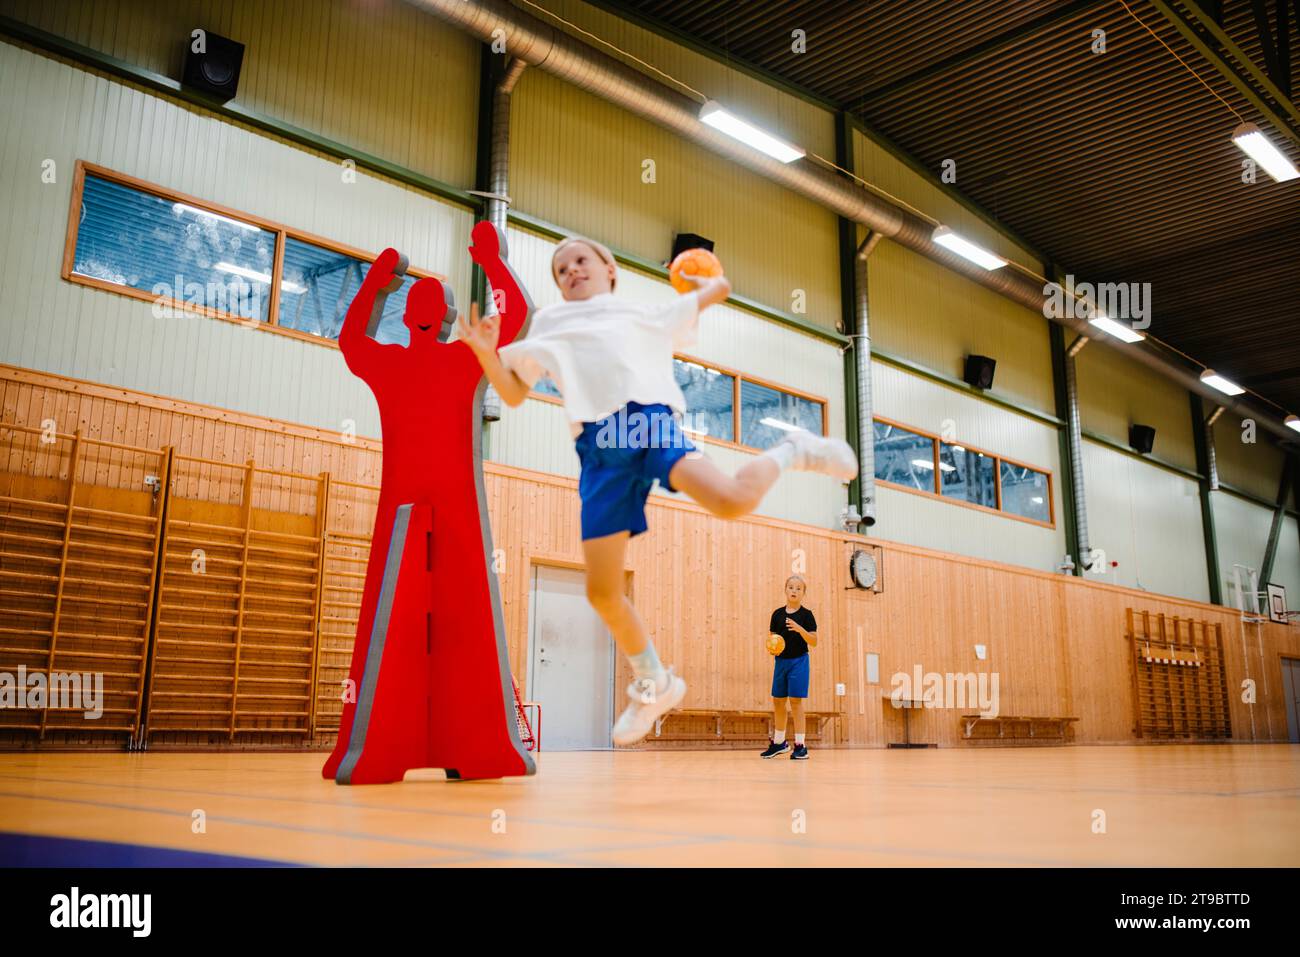 Handballspielerin springt beim Werfen von Handball auf dem Sportplatz Stockfoto